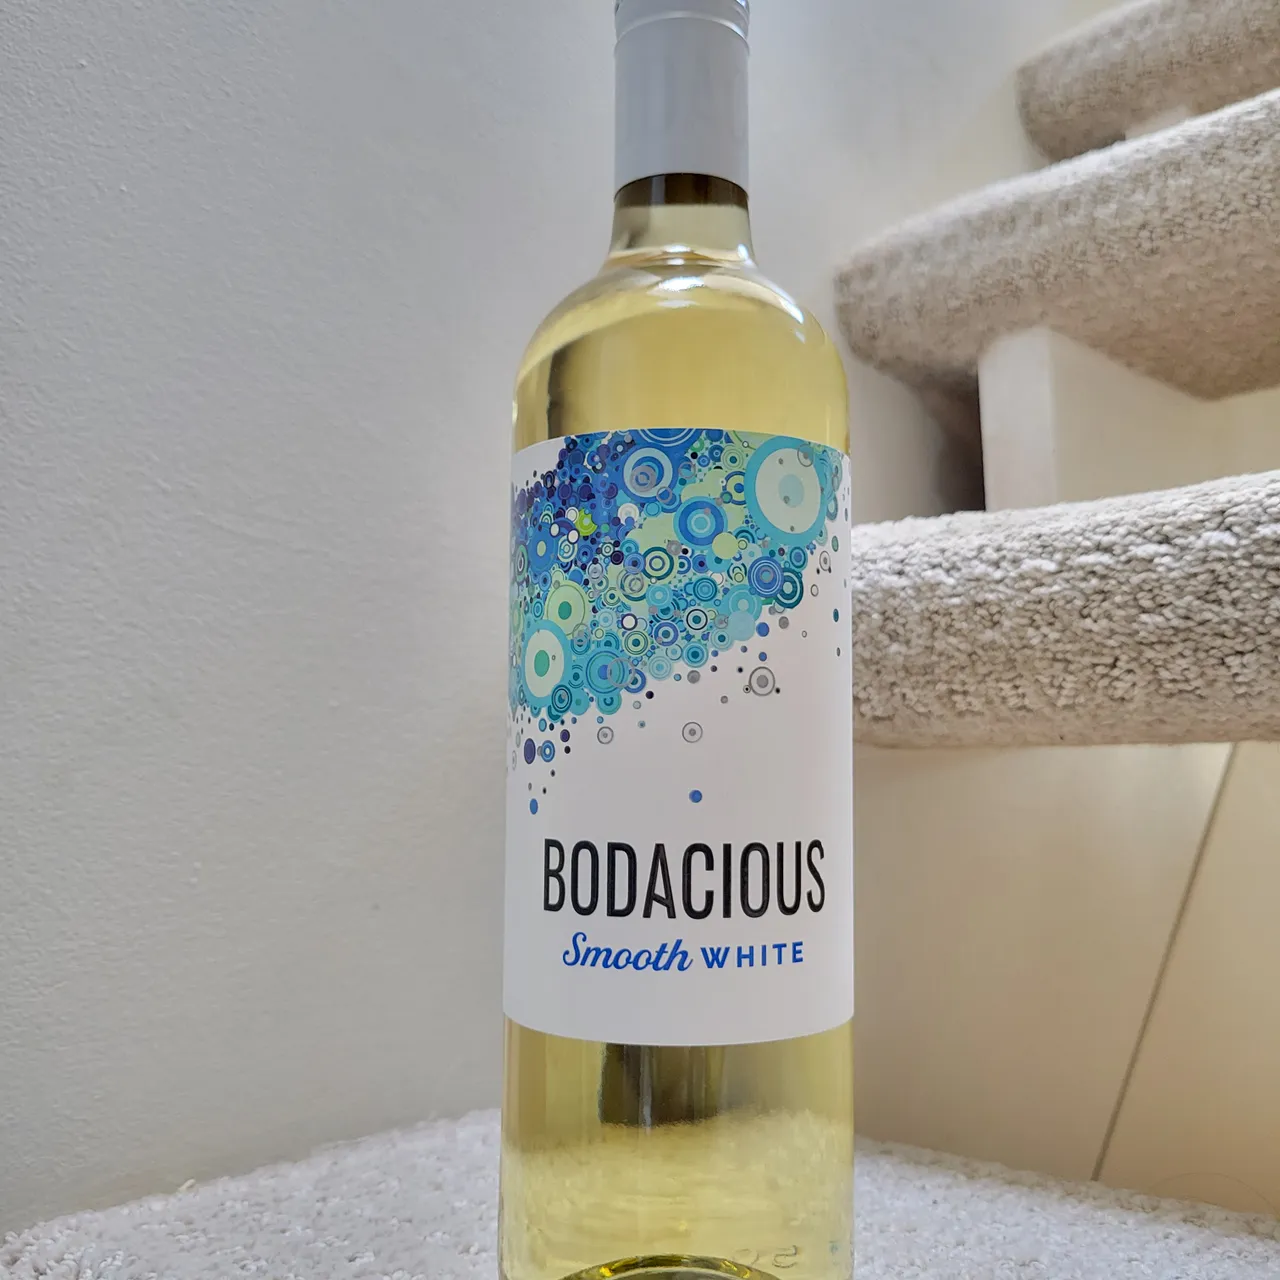 Bodacious Smooth White Wine photo 1